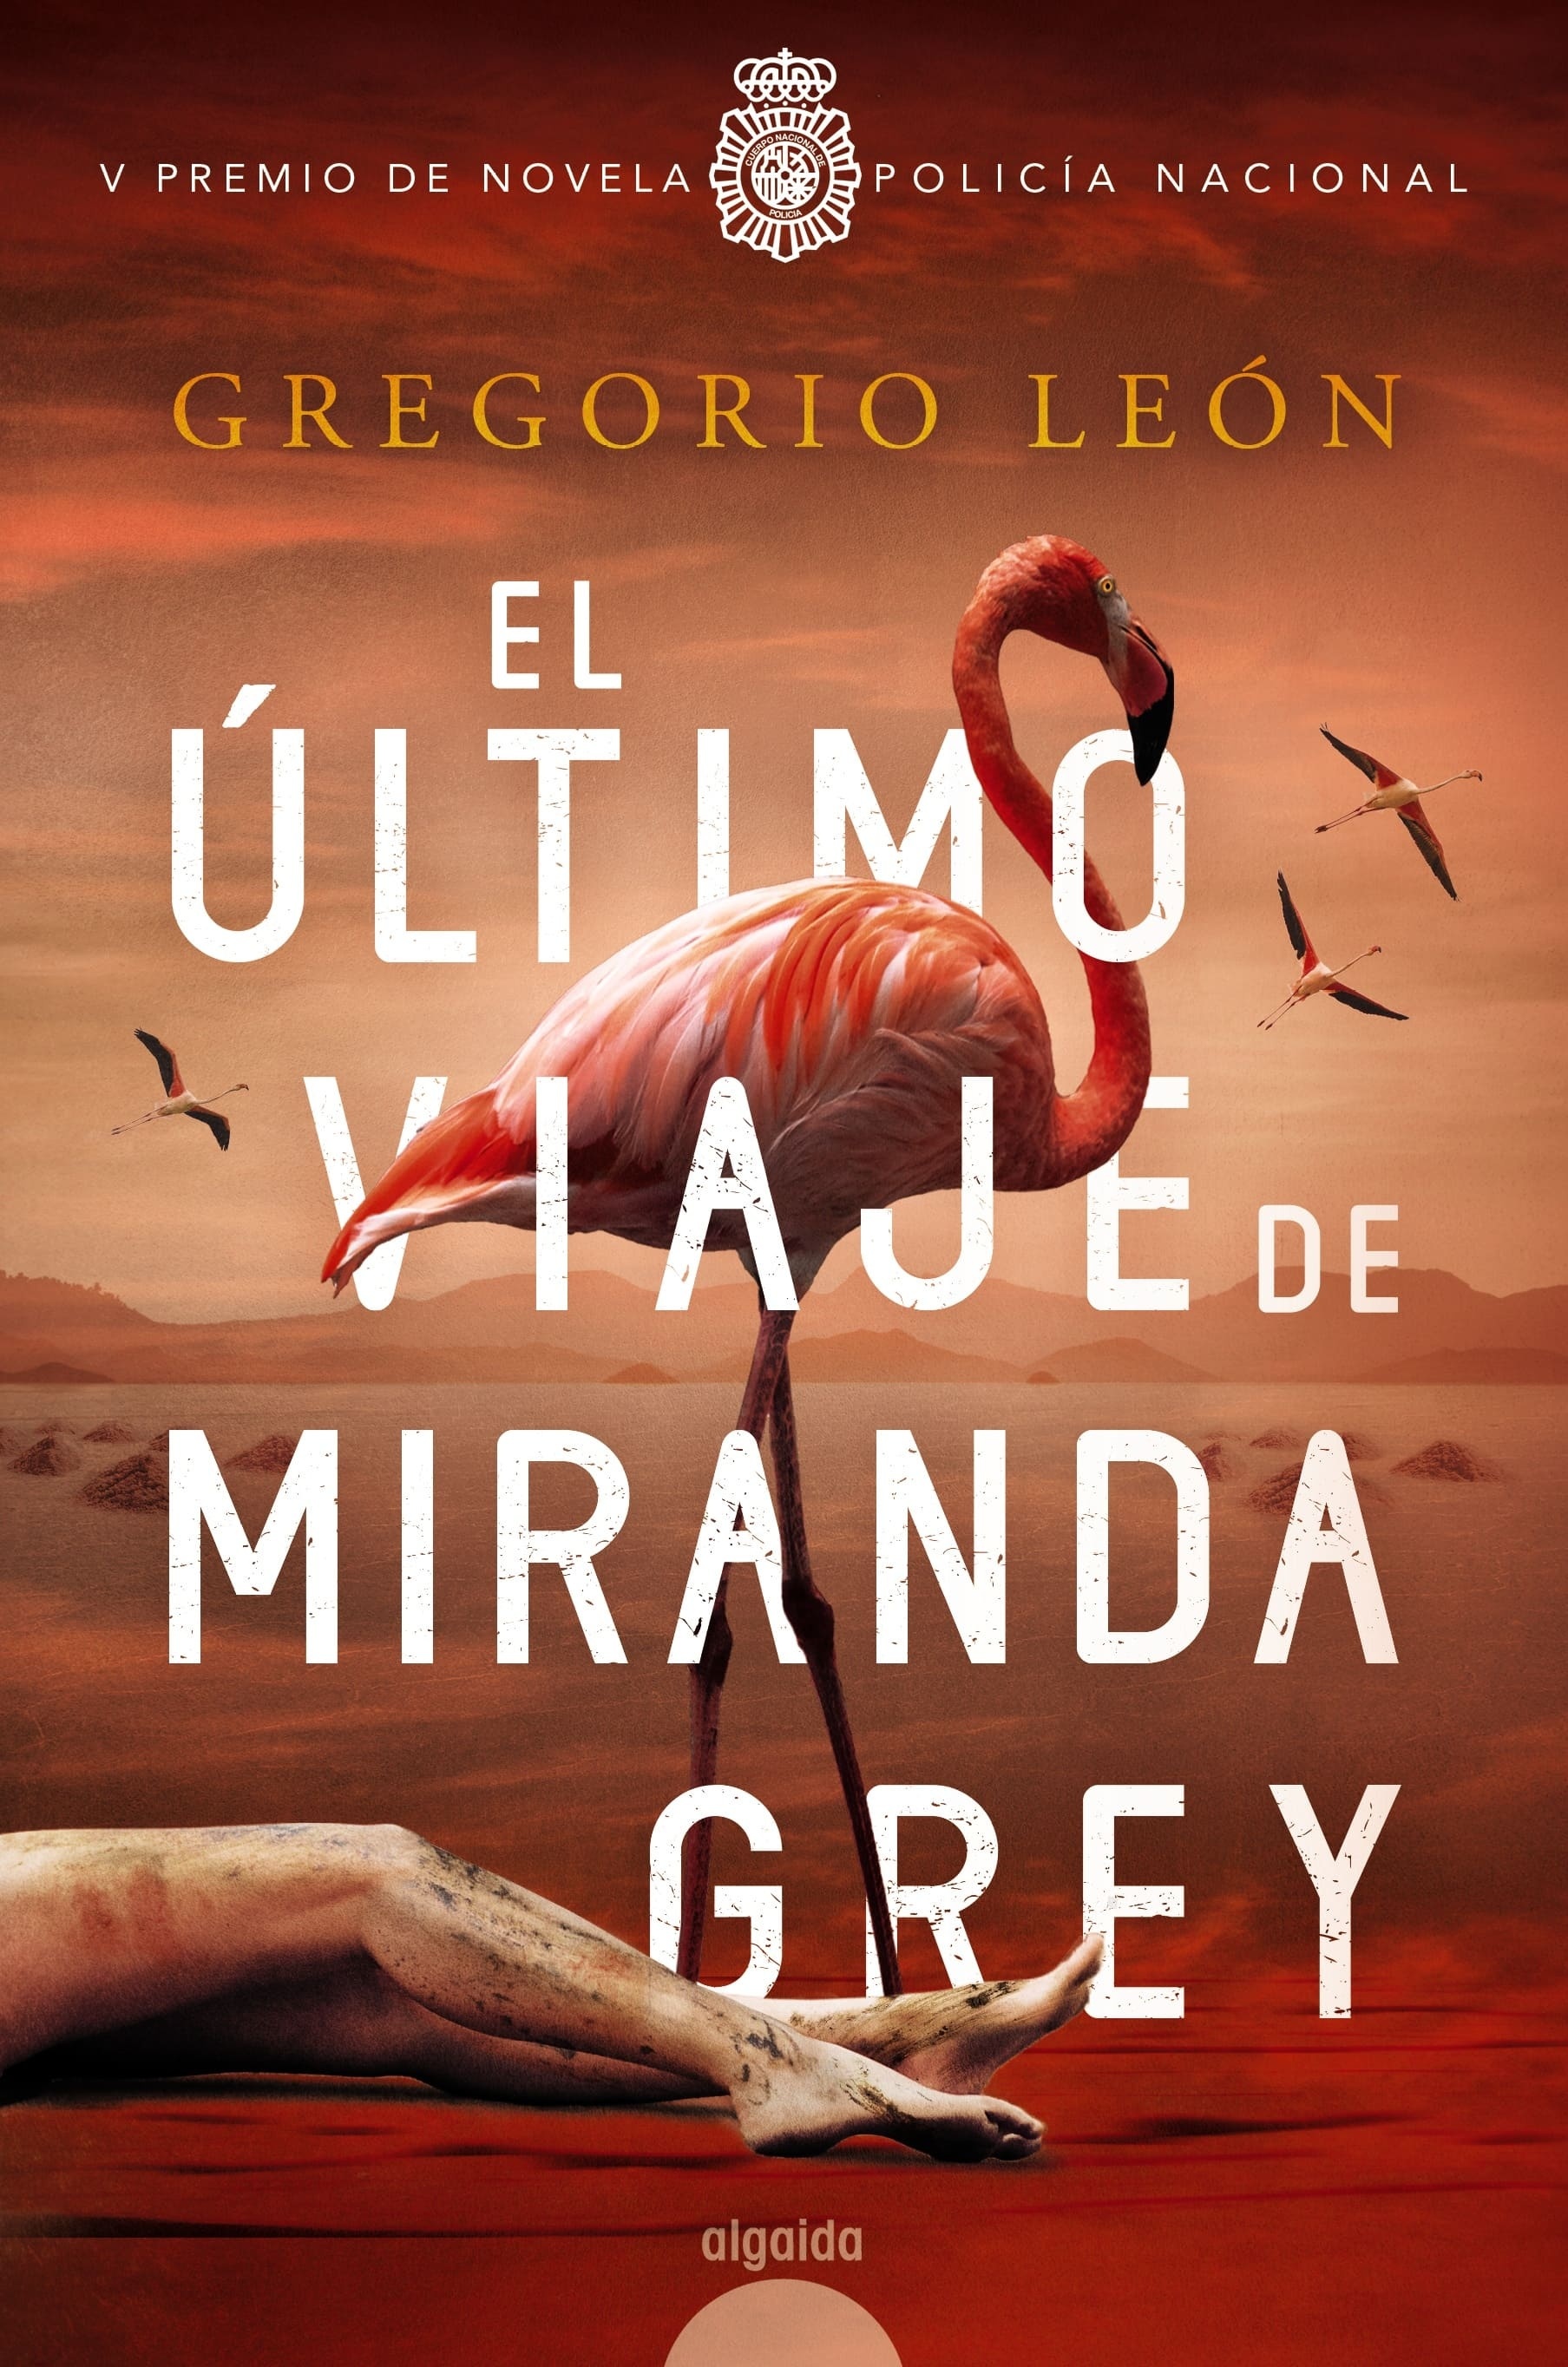 Ultimo viaje de Miranda Grey, El "V Premio de novela Policía Nacional". 